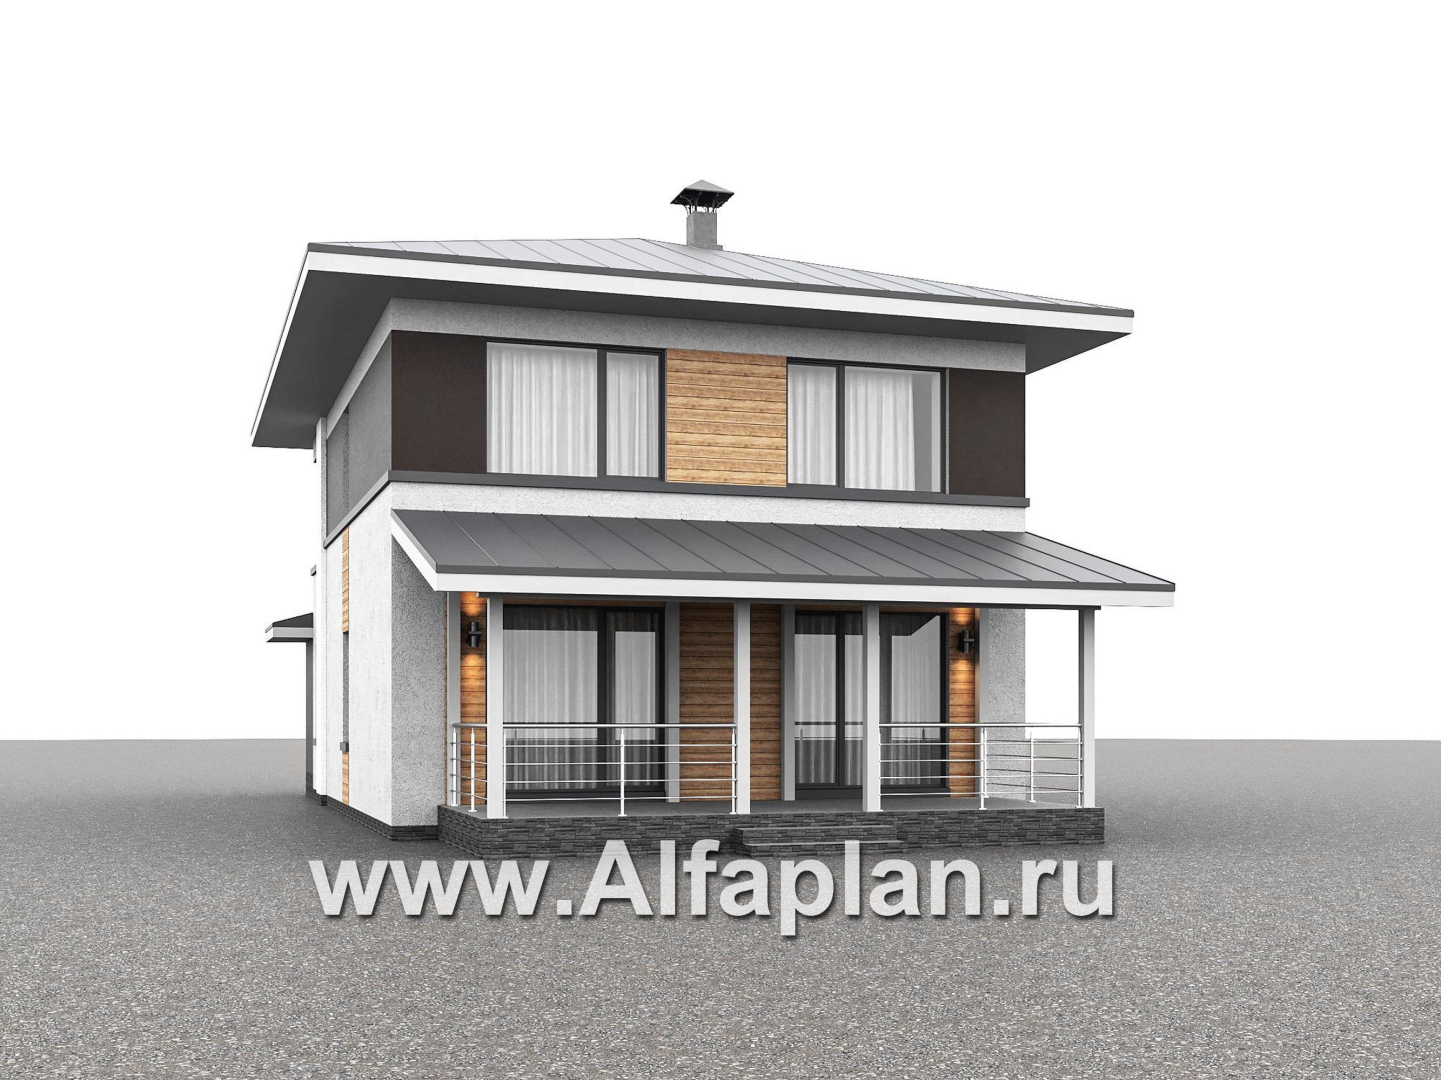 Проекты домов Альфаплан - "Генезис" - проект дома, 2 этажа, с террасой в стиле Райта - дополнительное изображение №2